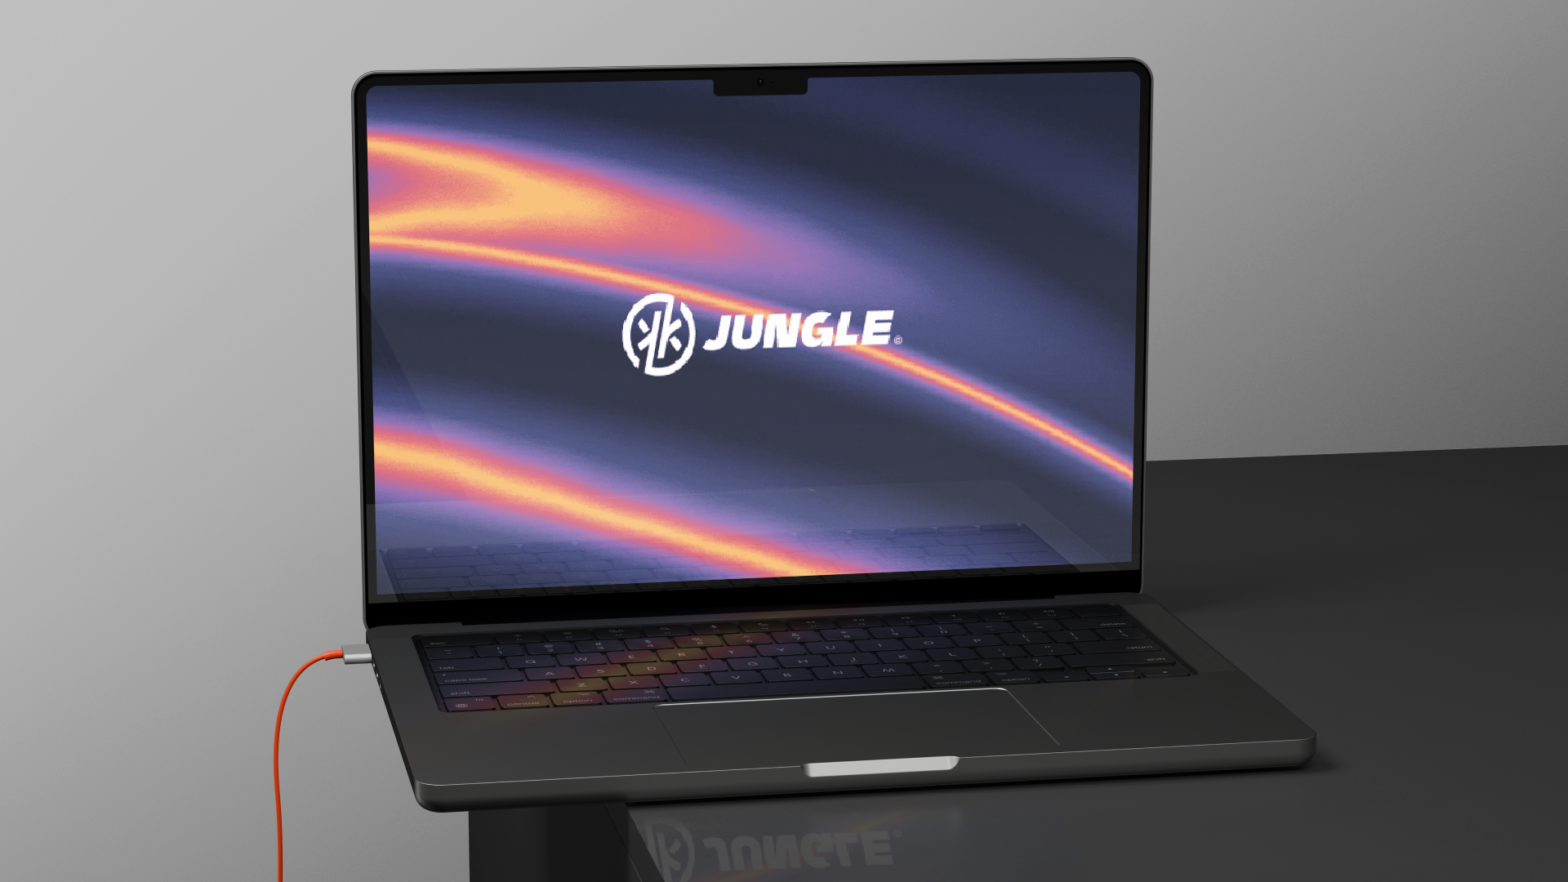 Web3 studio Jungle has raised $6 million in investment